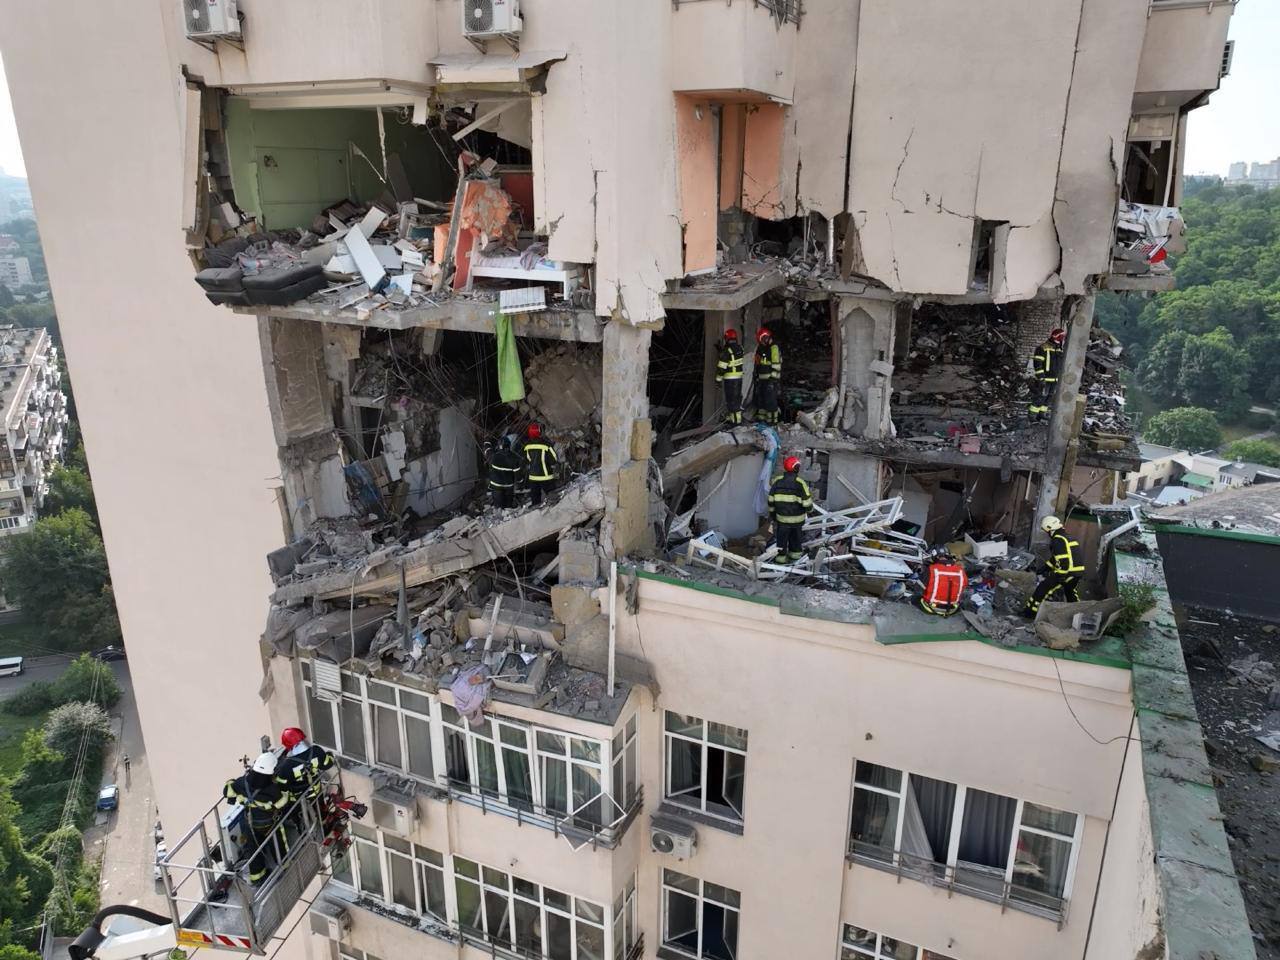 Обломки и бетон разлетались повсюду: появились новые фото и видео дома в Киеве, пострадавшего от атаки РФ